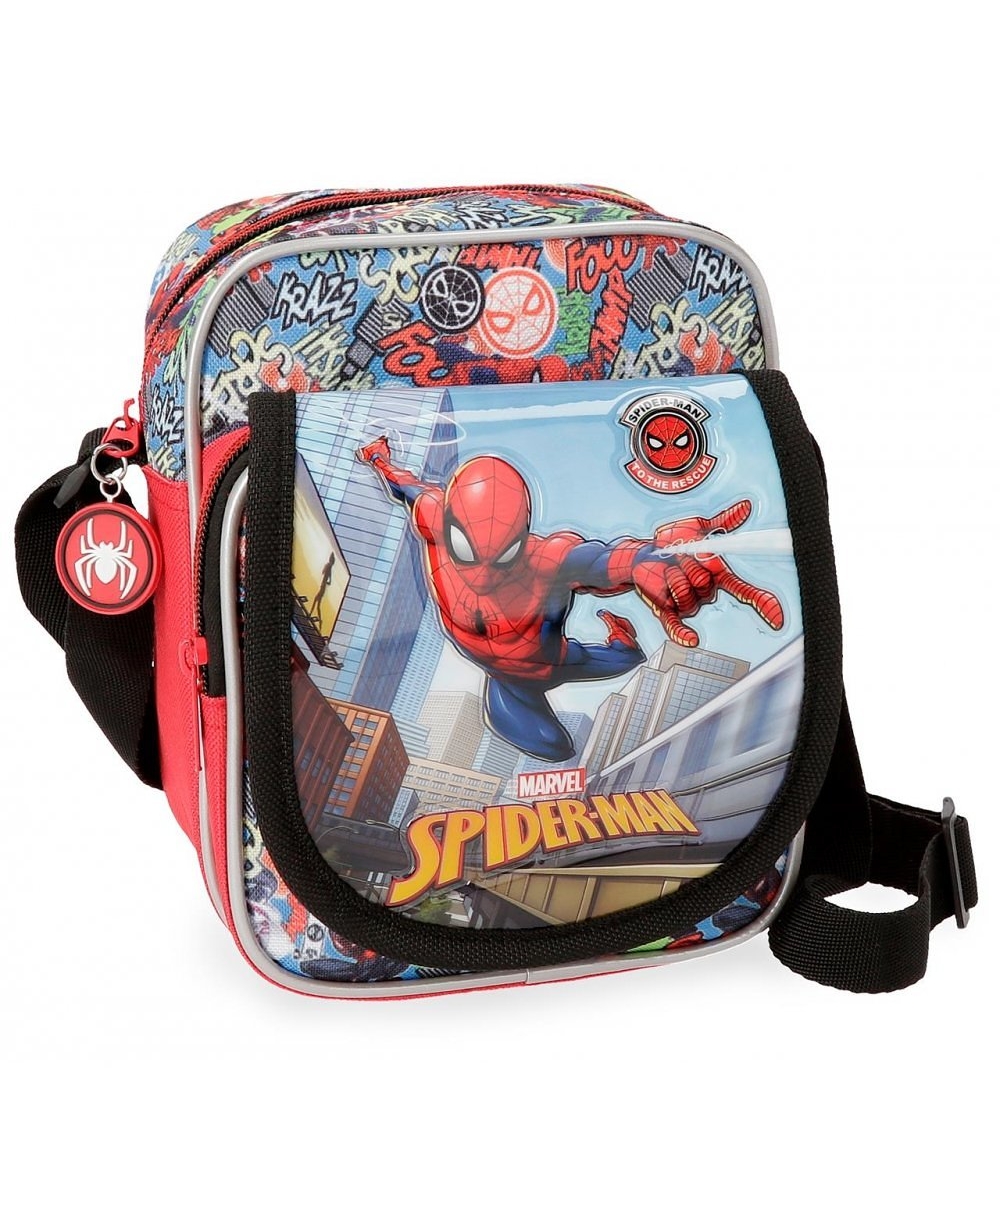 Bandolera niño Spiderman Grafiti Spider-Man Multicolor 19cm